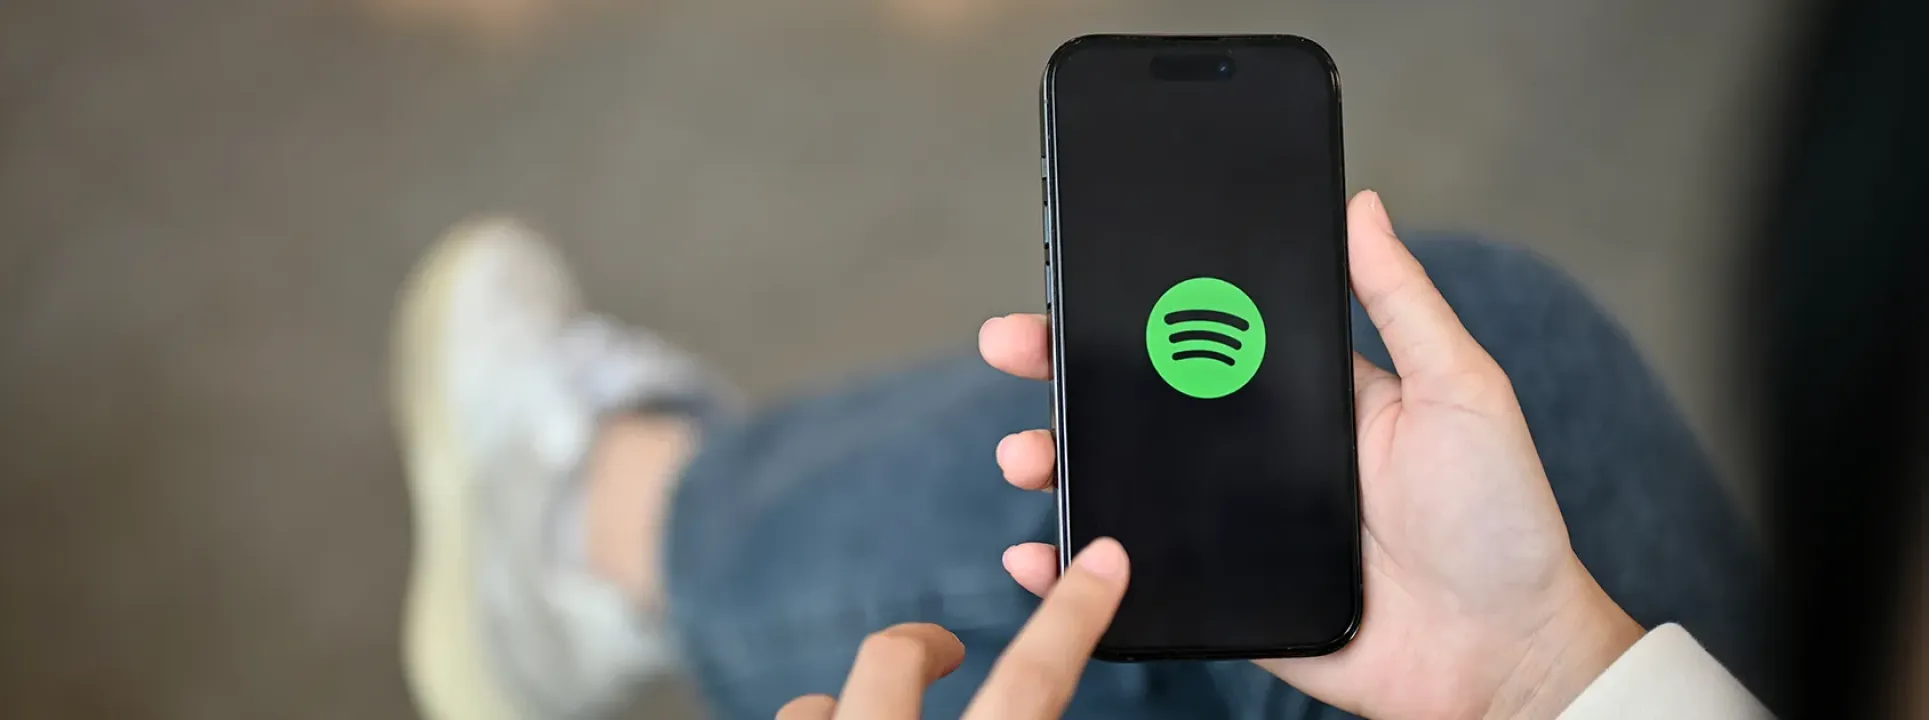 6 alternativas a Spotify para escuchar tu música